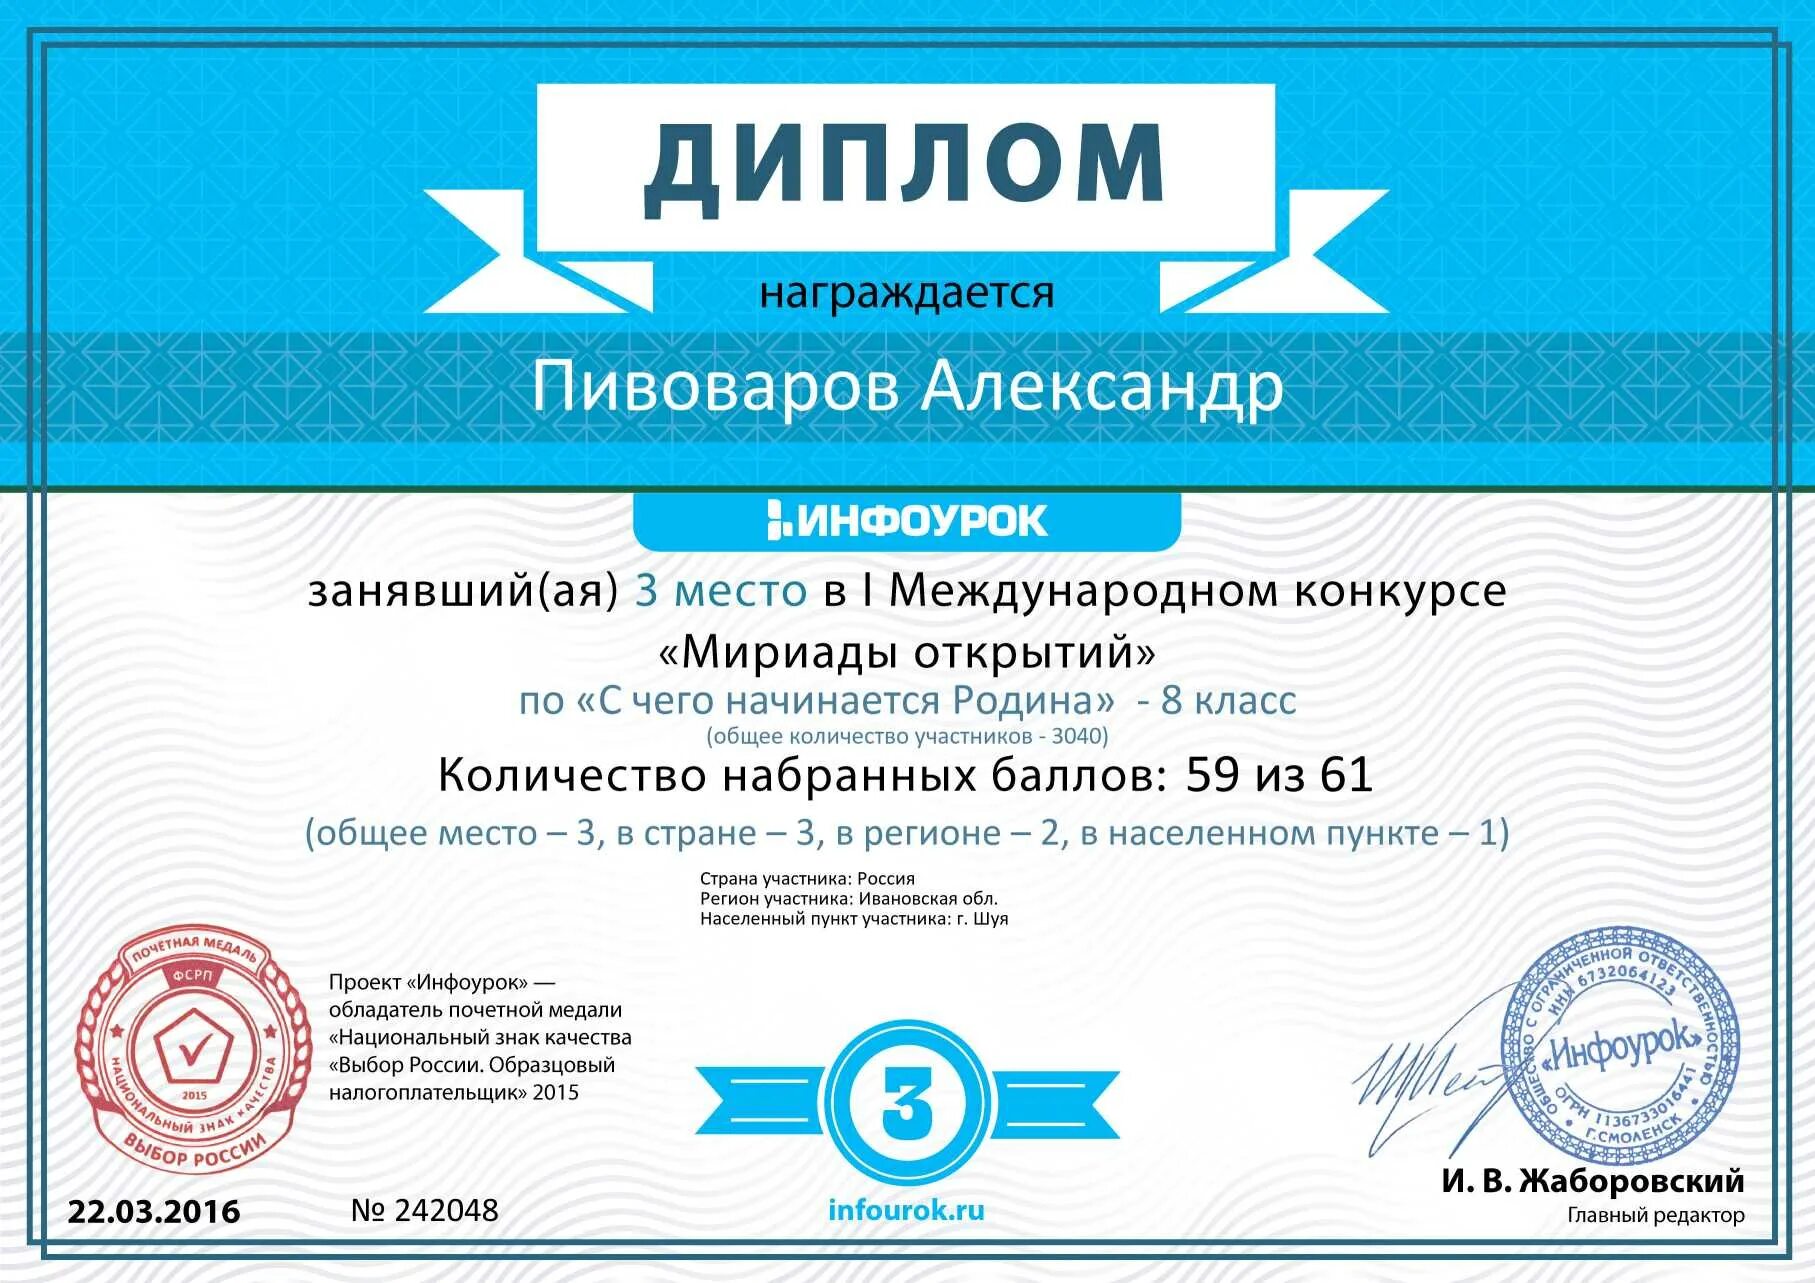 Infourok ru тесты. Дипломы сертификаты грамоты. Сертификат за участие в Олимпиаде по математике для начальной школы.